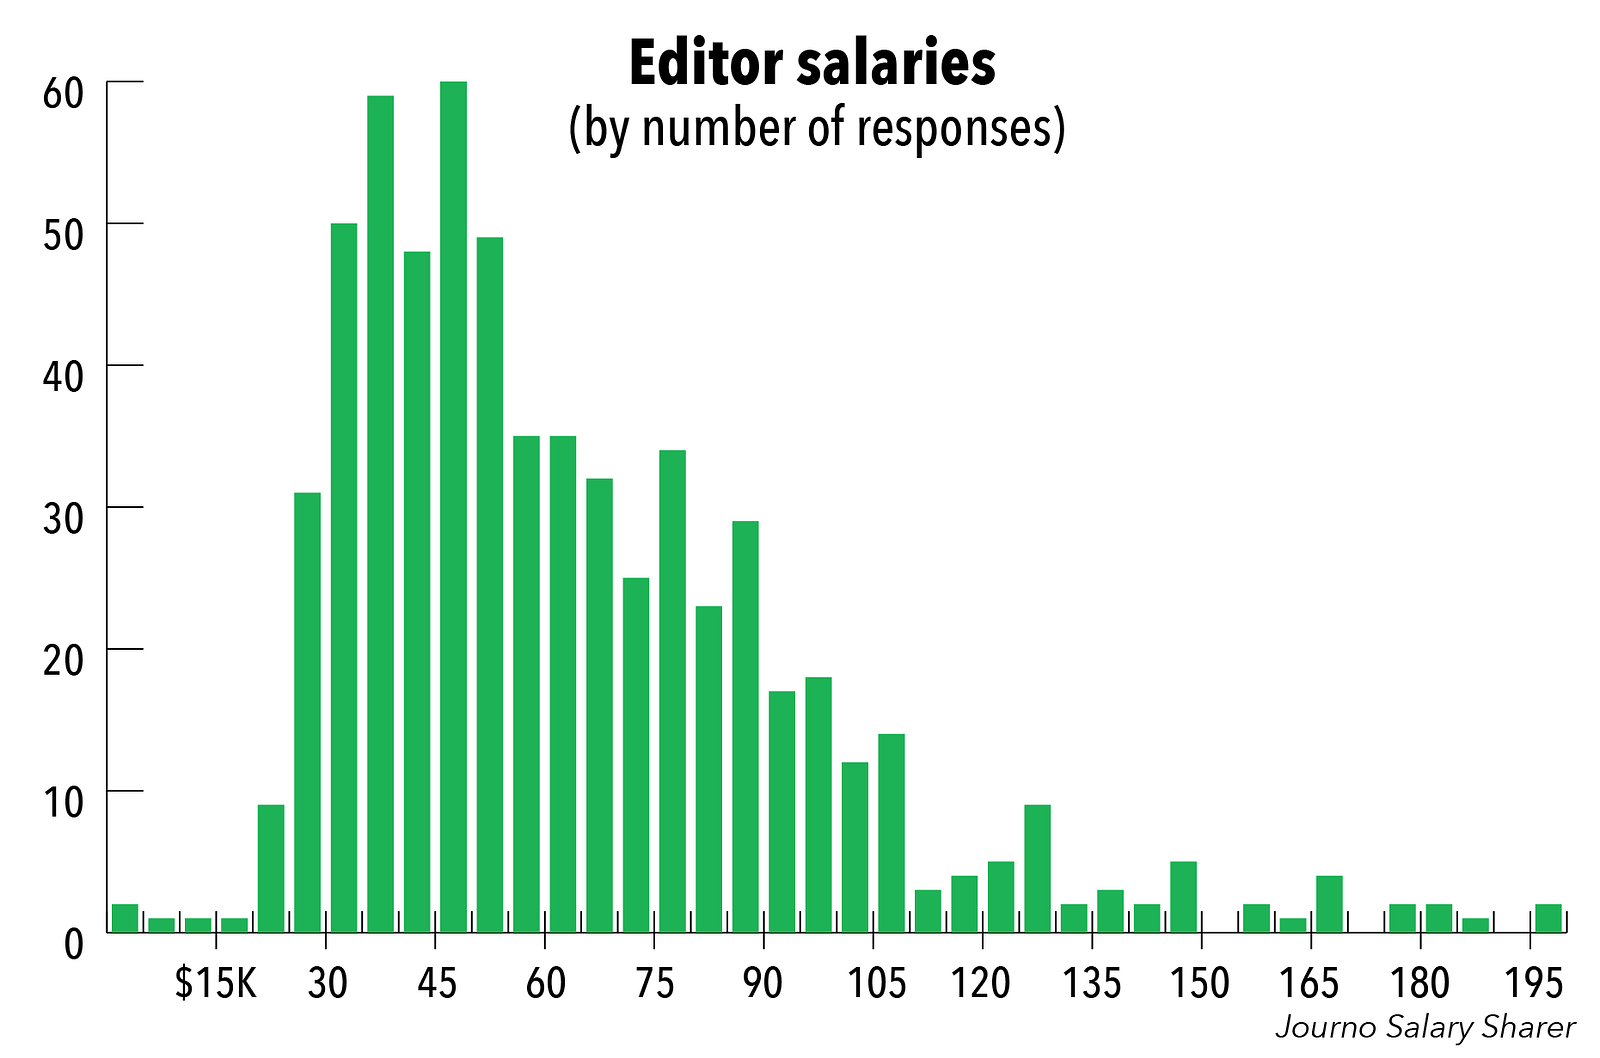 Journo Salary Sharer How Much Do Editors Make Journo Salary Sharer Medium 6500